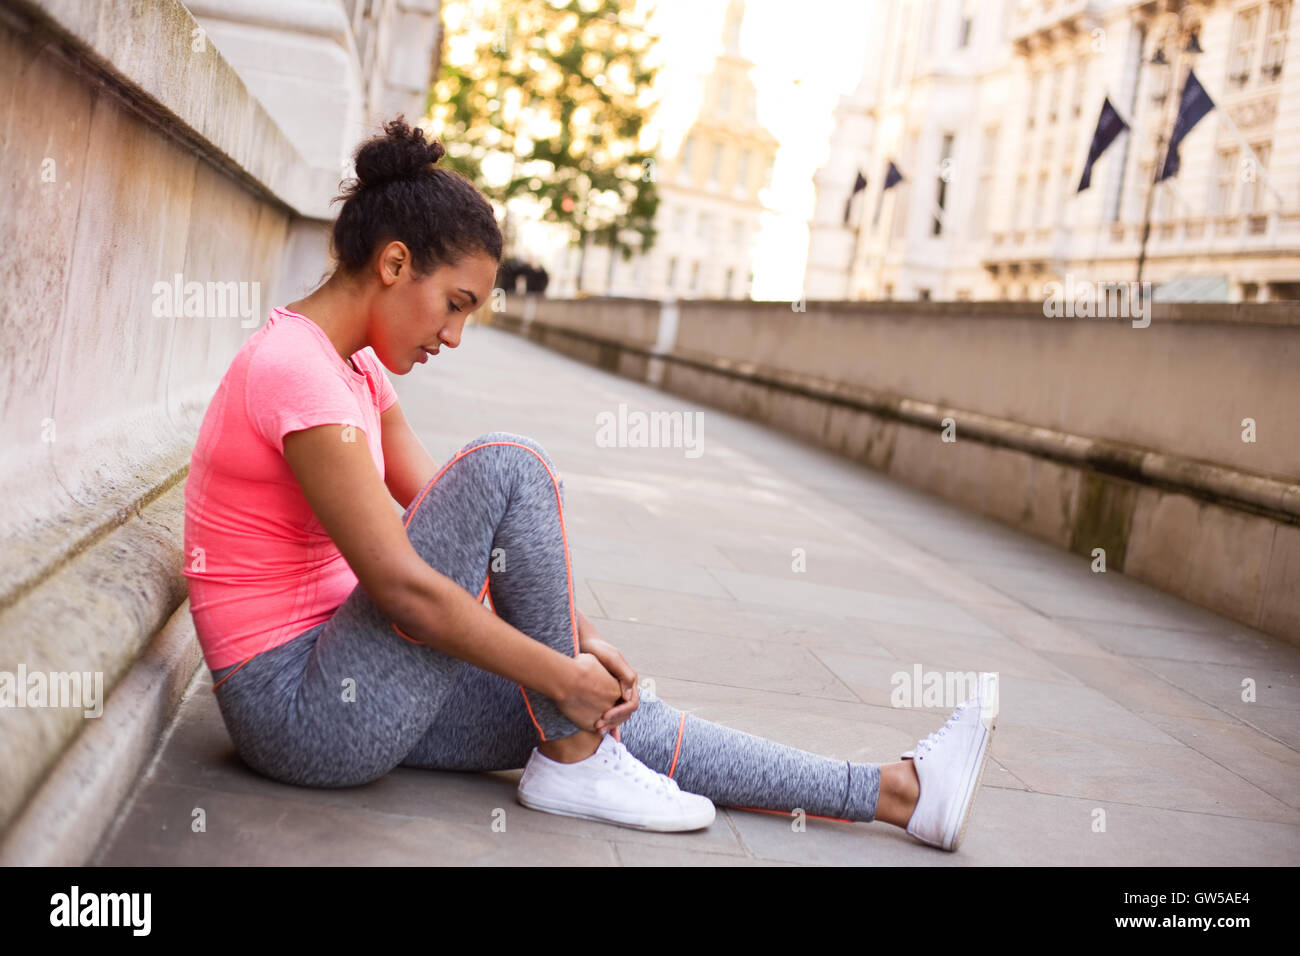 Jeune femme sentant son cheville douloureuse après l'exercice Banque D'Images